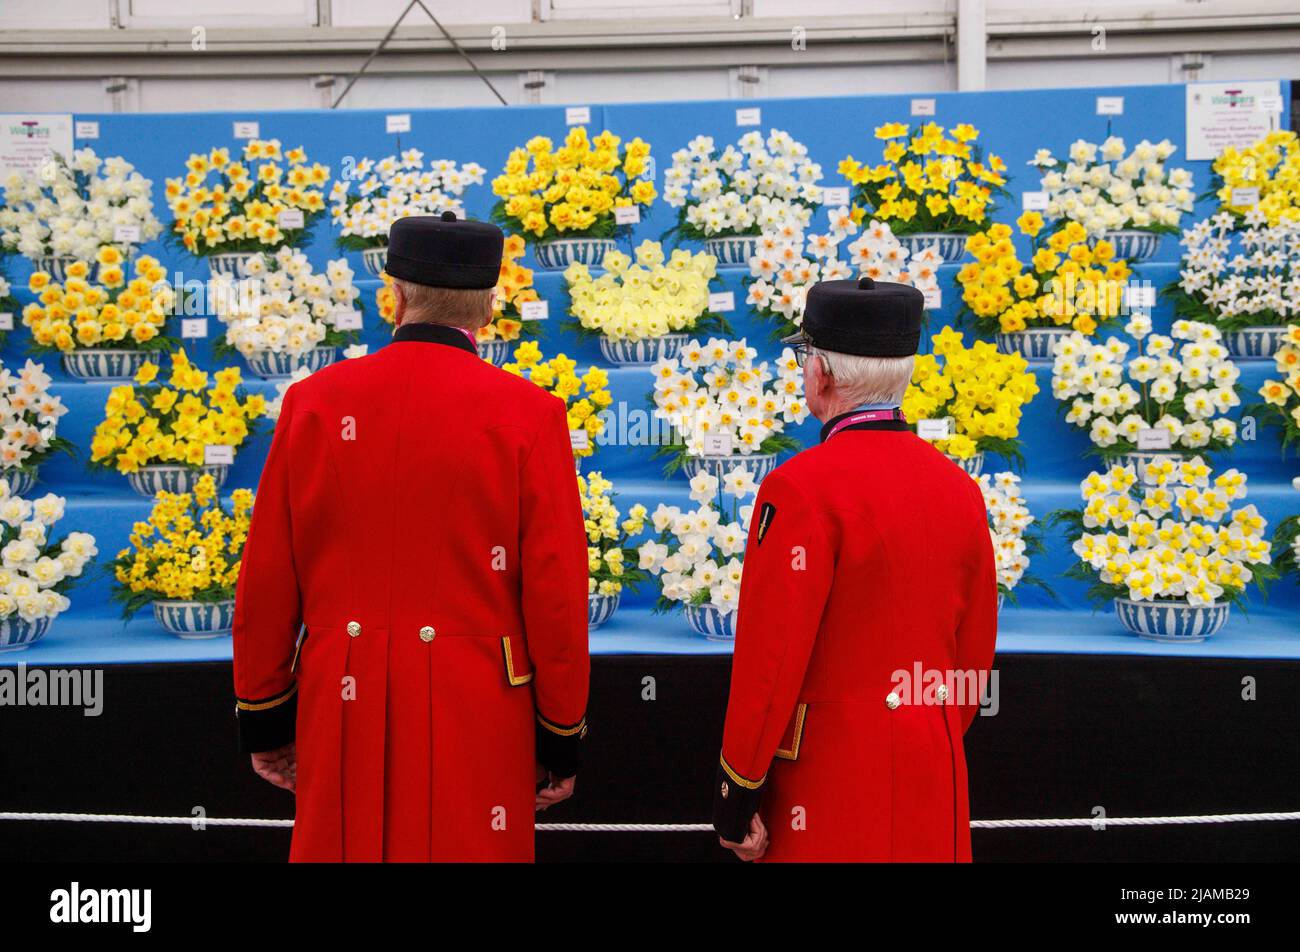 Los Pensioners del Chelsea admiran una hermosa exhibición de narcisos en el Salón de Flor del Chelsea del RHS. Foto de stock